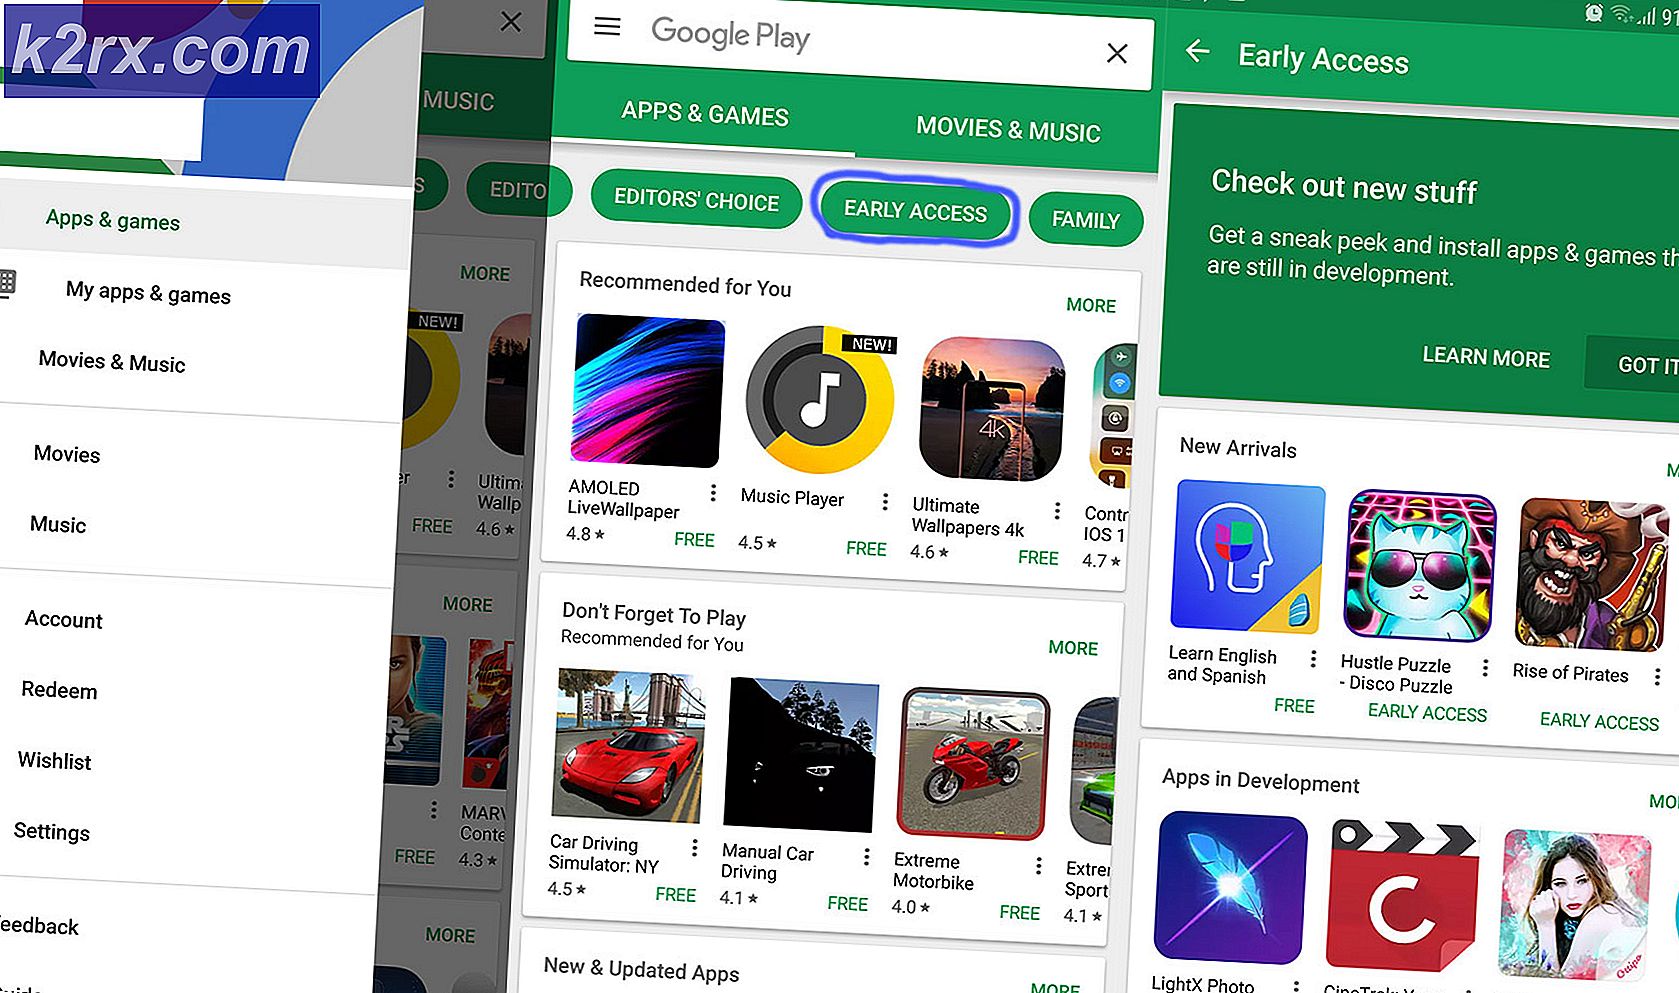 Sådan testes uudgivne apps fra Googles Play Butik